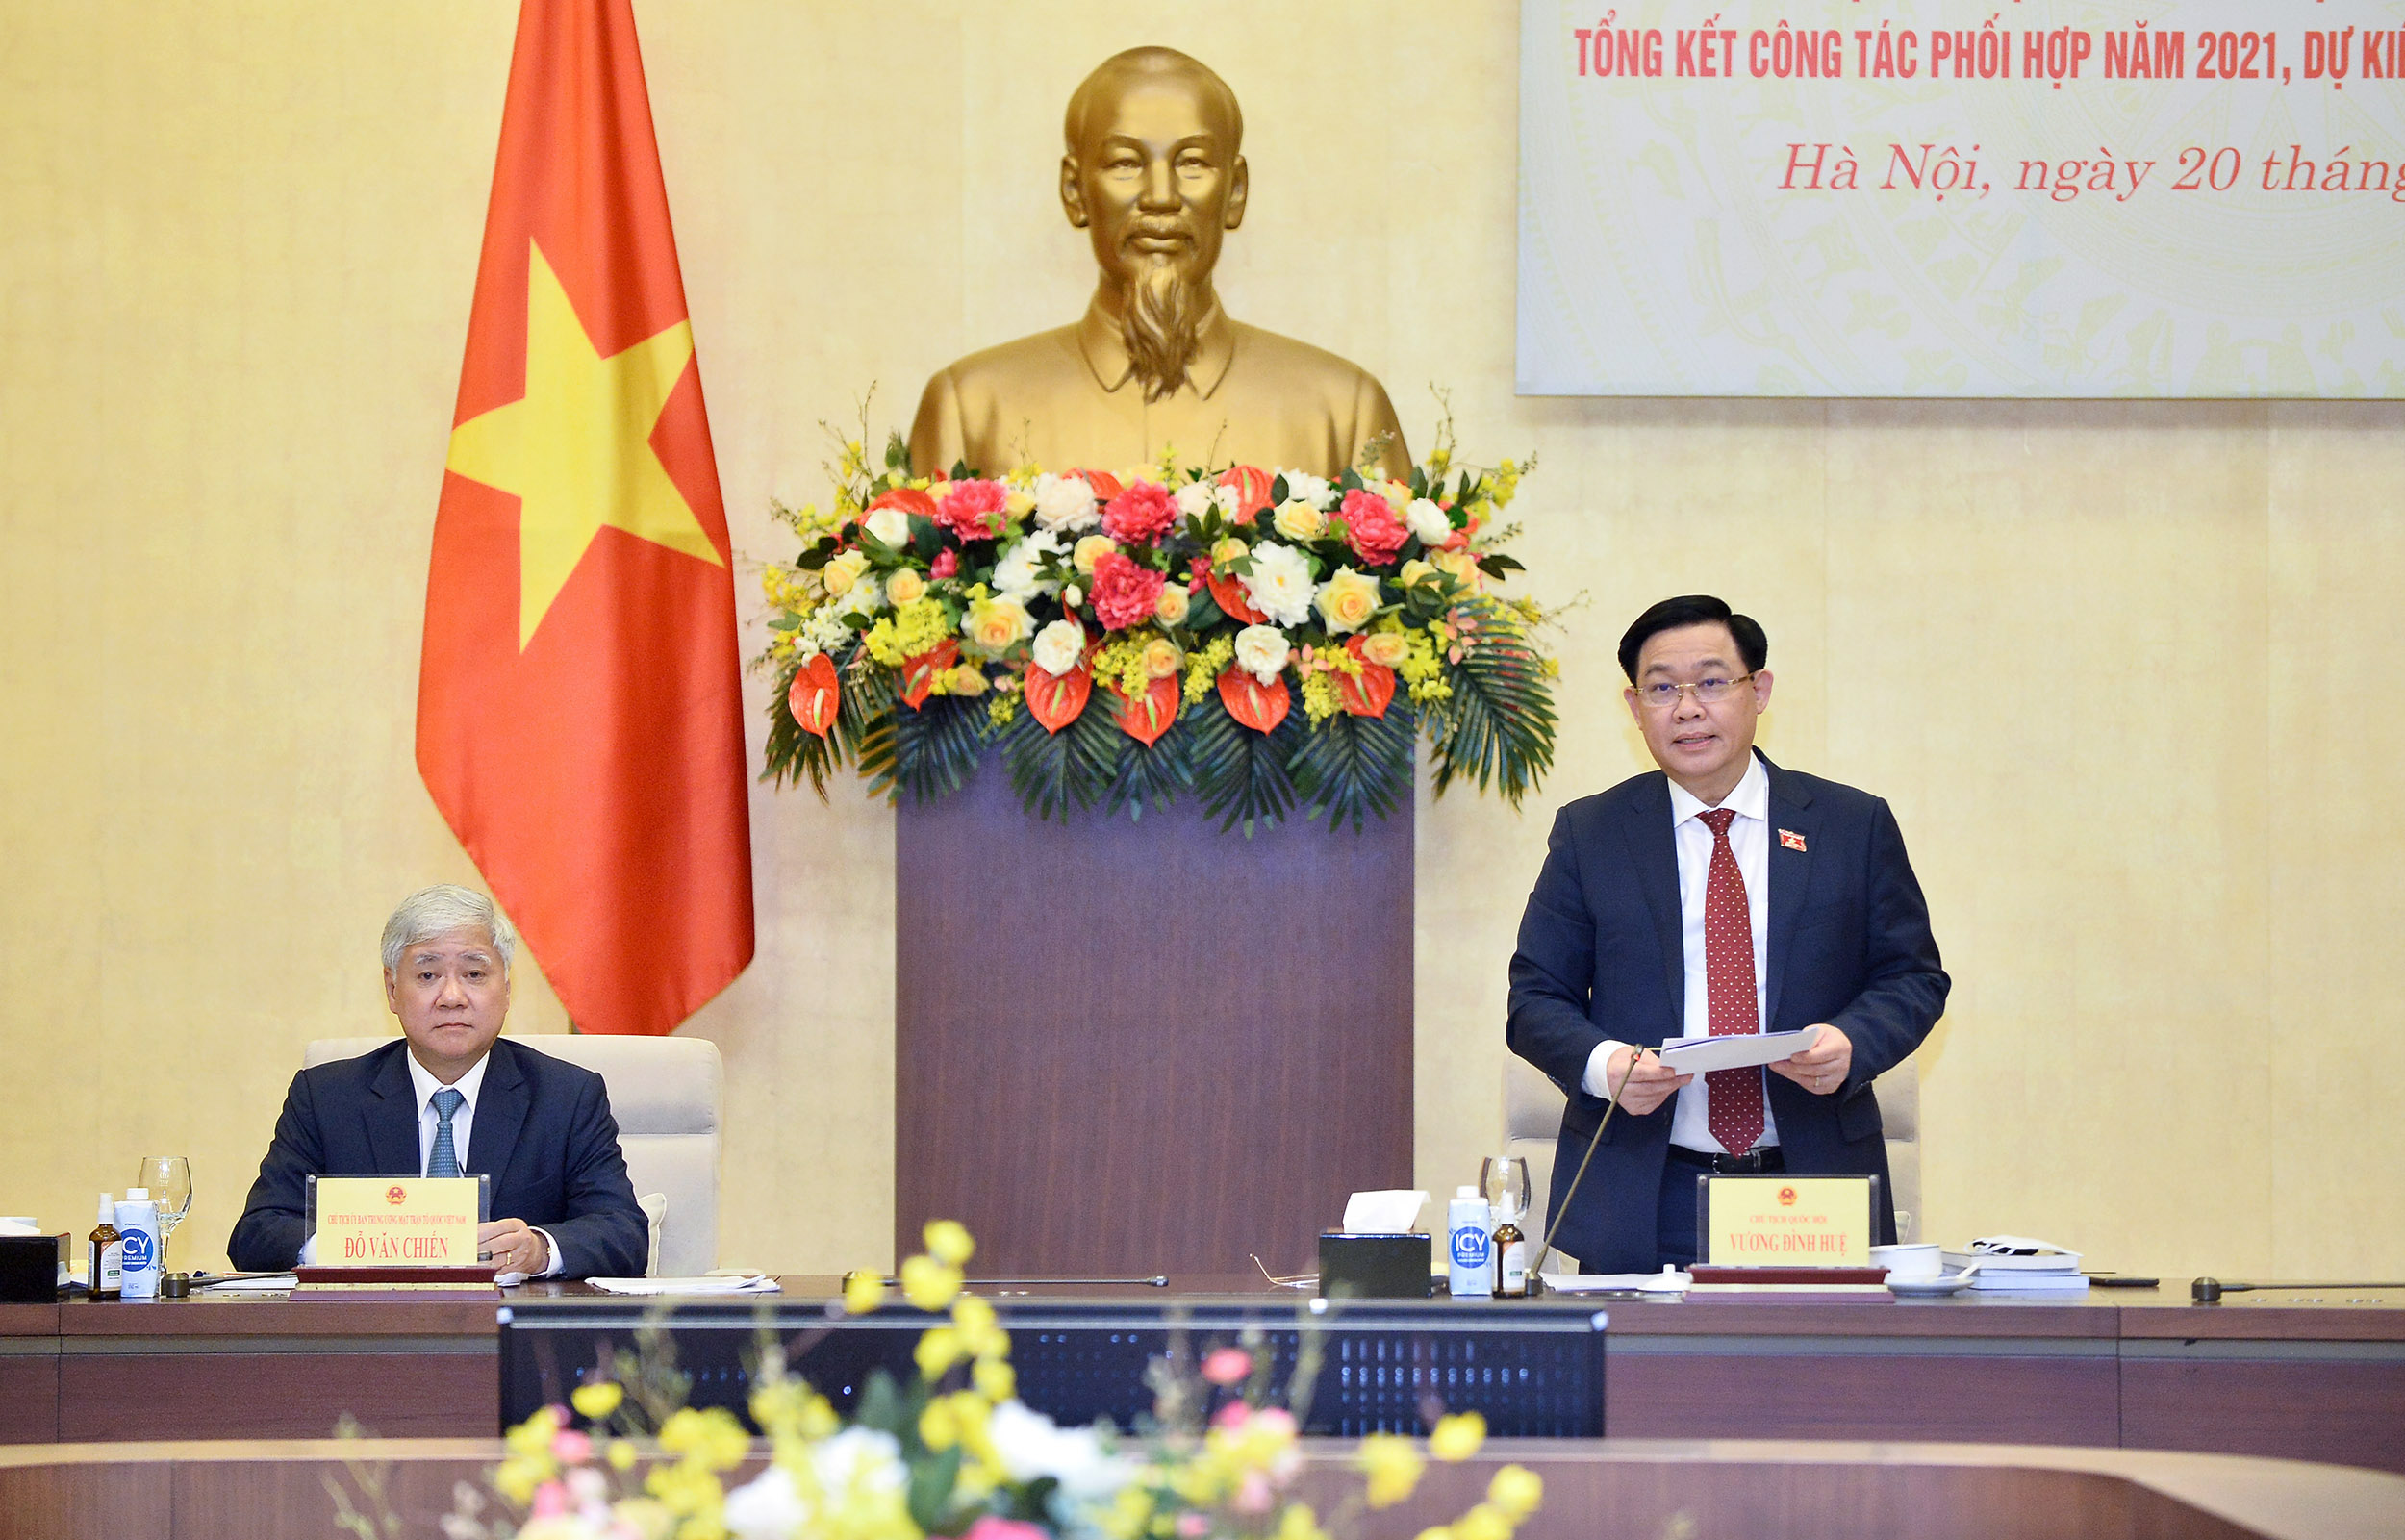 Ủy ban Trung ương Mặt trận Tổ quốc Việt Nam đề xuất Quốc hội Luật Hoạt động giám sát của nhân dân